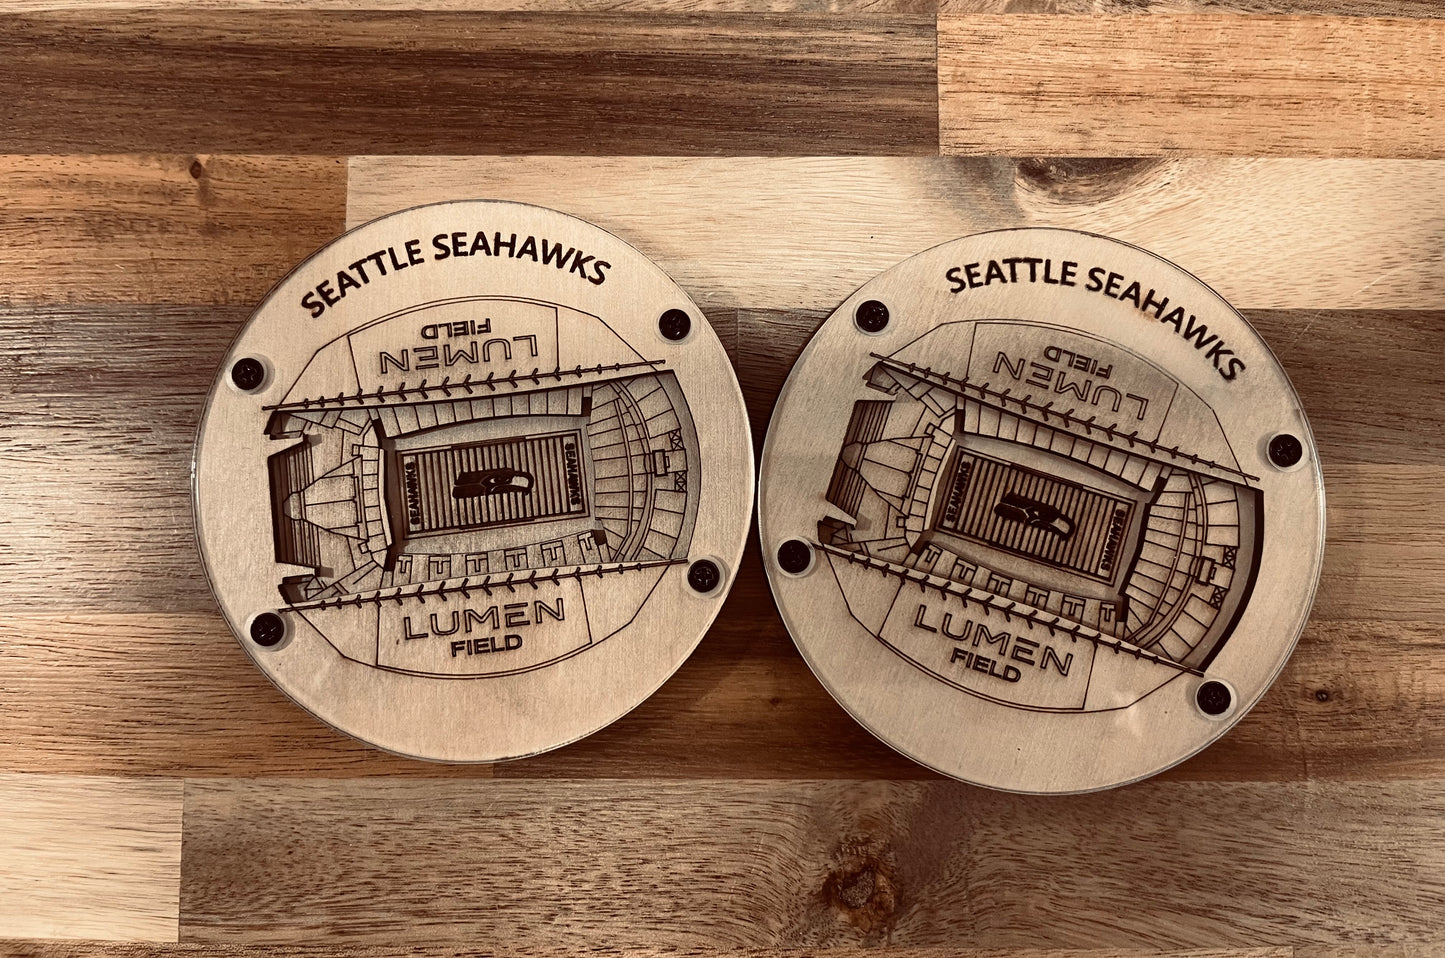 NFL Stadium Coasters